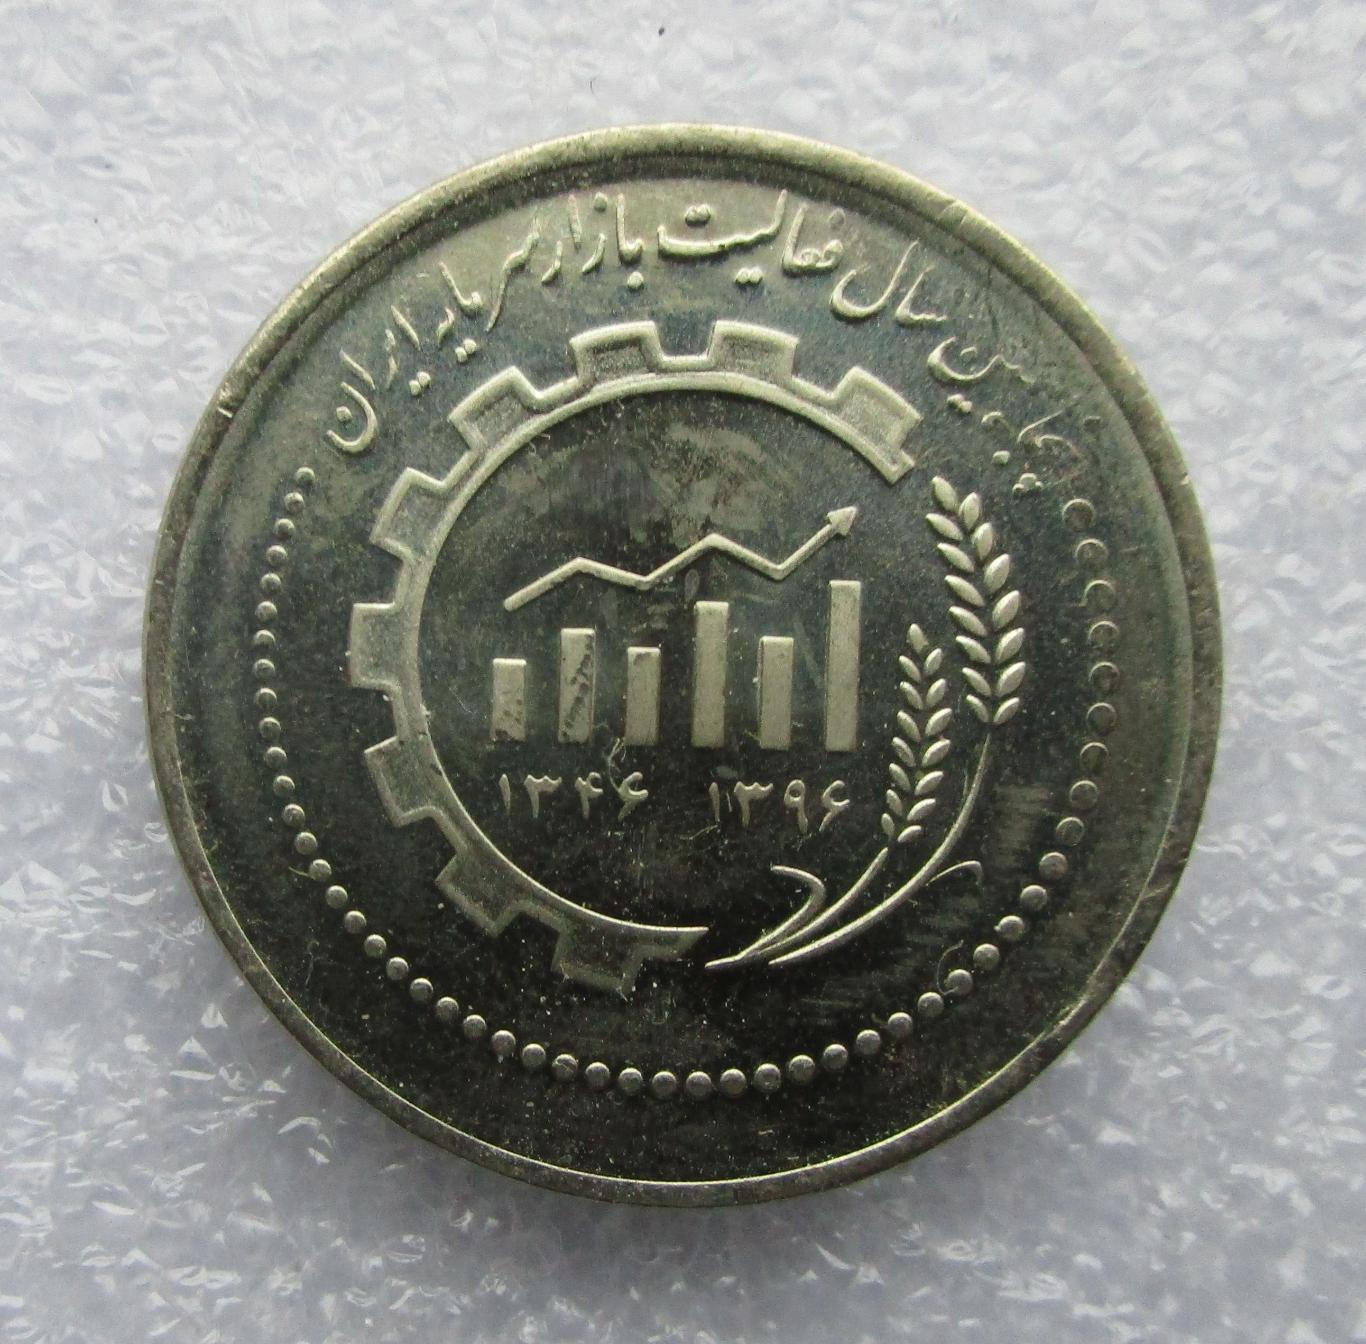 Иран , 5000 риалов 2018. 50 лет Иранскому рынку капитала. UNC. Штемпельный блеск 2